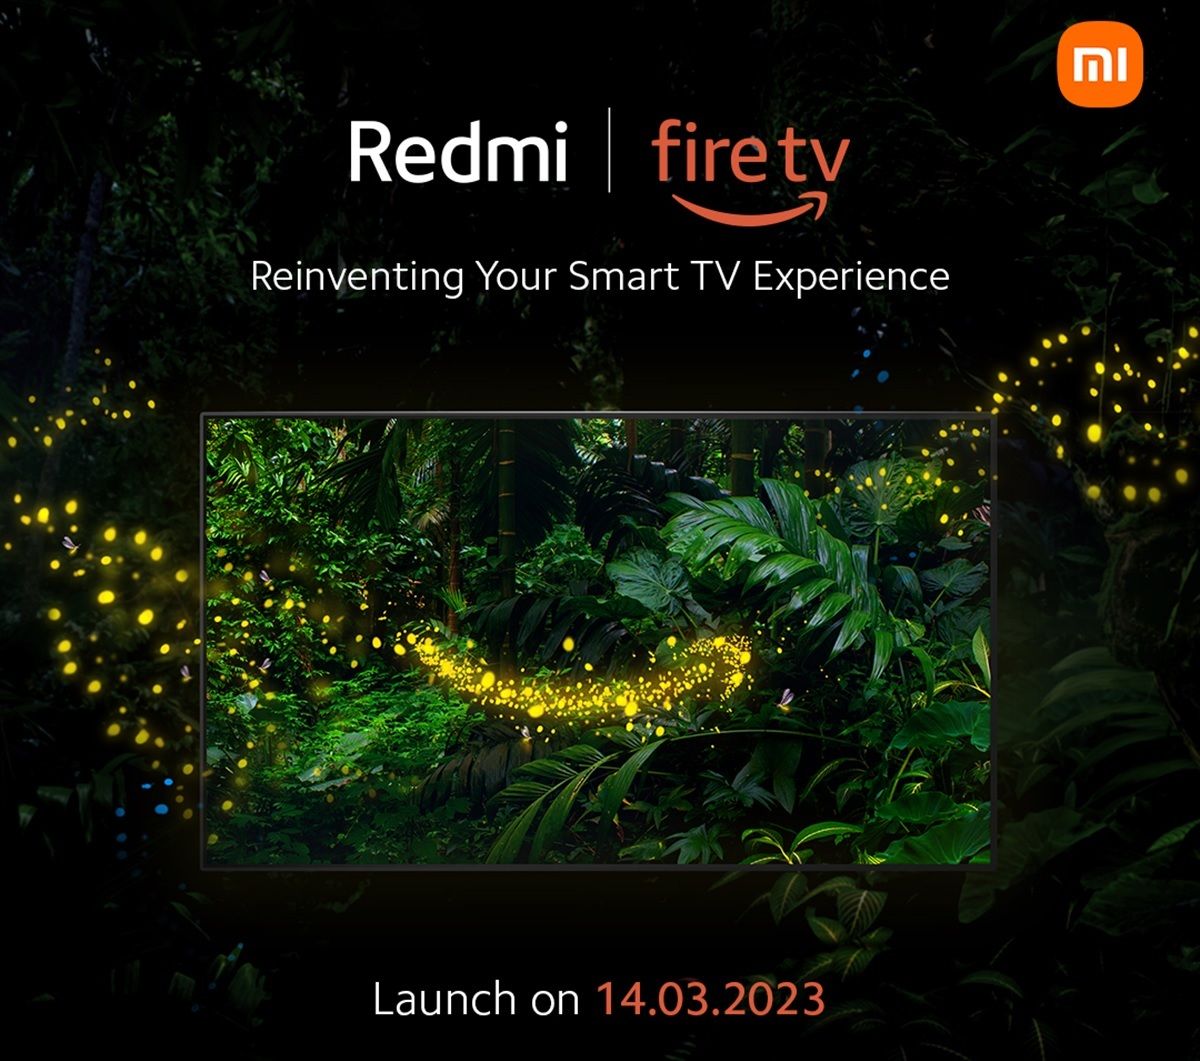 Xiaomi lo confirma la primera tele Redmi con Amazon Fire OS esta al caer